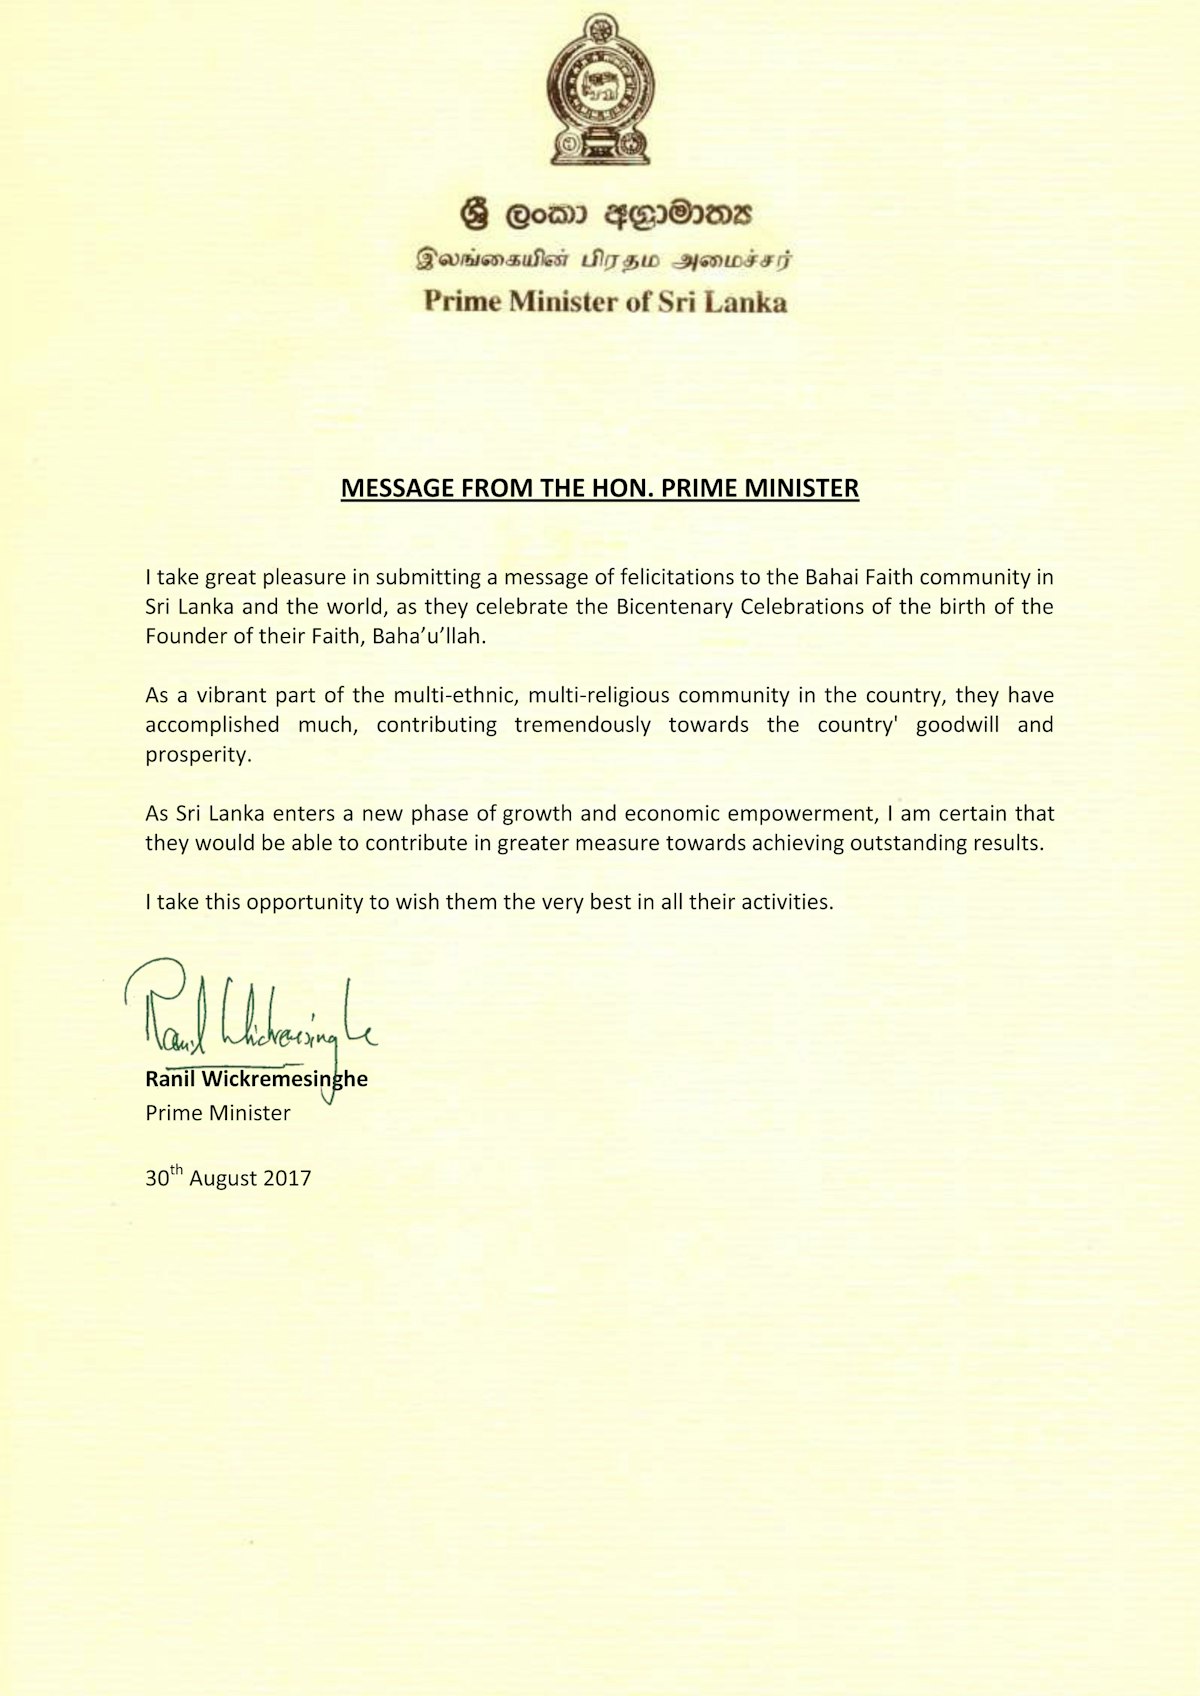 نخست‌وزیر سریلانکا، آقای رانیل ویکرمیسنگه در تاریخ ۳۰ اوت ۲۰۱۷ پیامی به جامعۀ بهائی این کشور صادر کرد و از این جامعه به دلیل «مشارکت ارزنده در جهت مصالح و رفاه این کشور» تقدیر نمود.